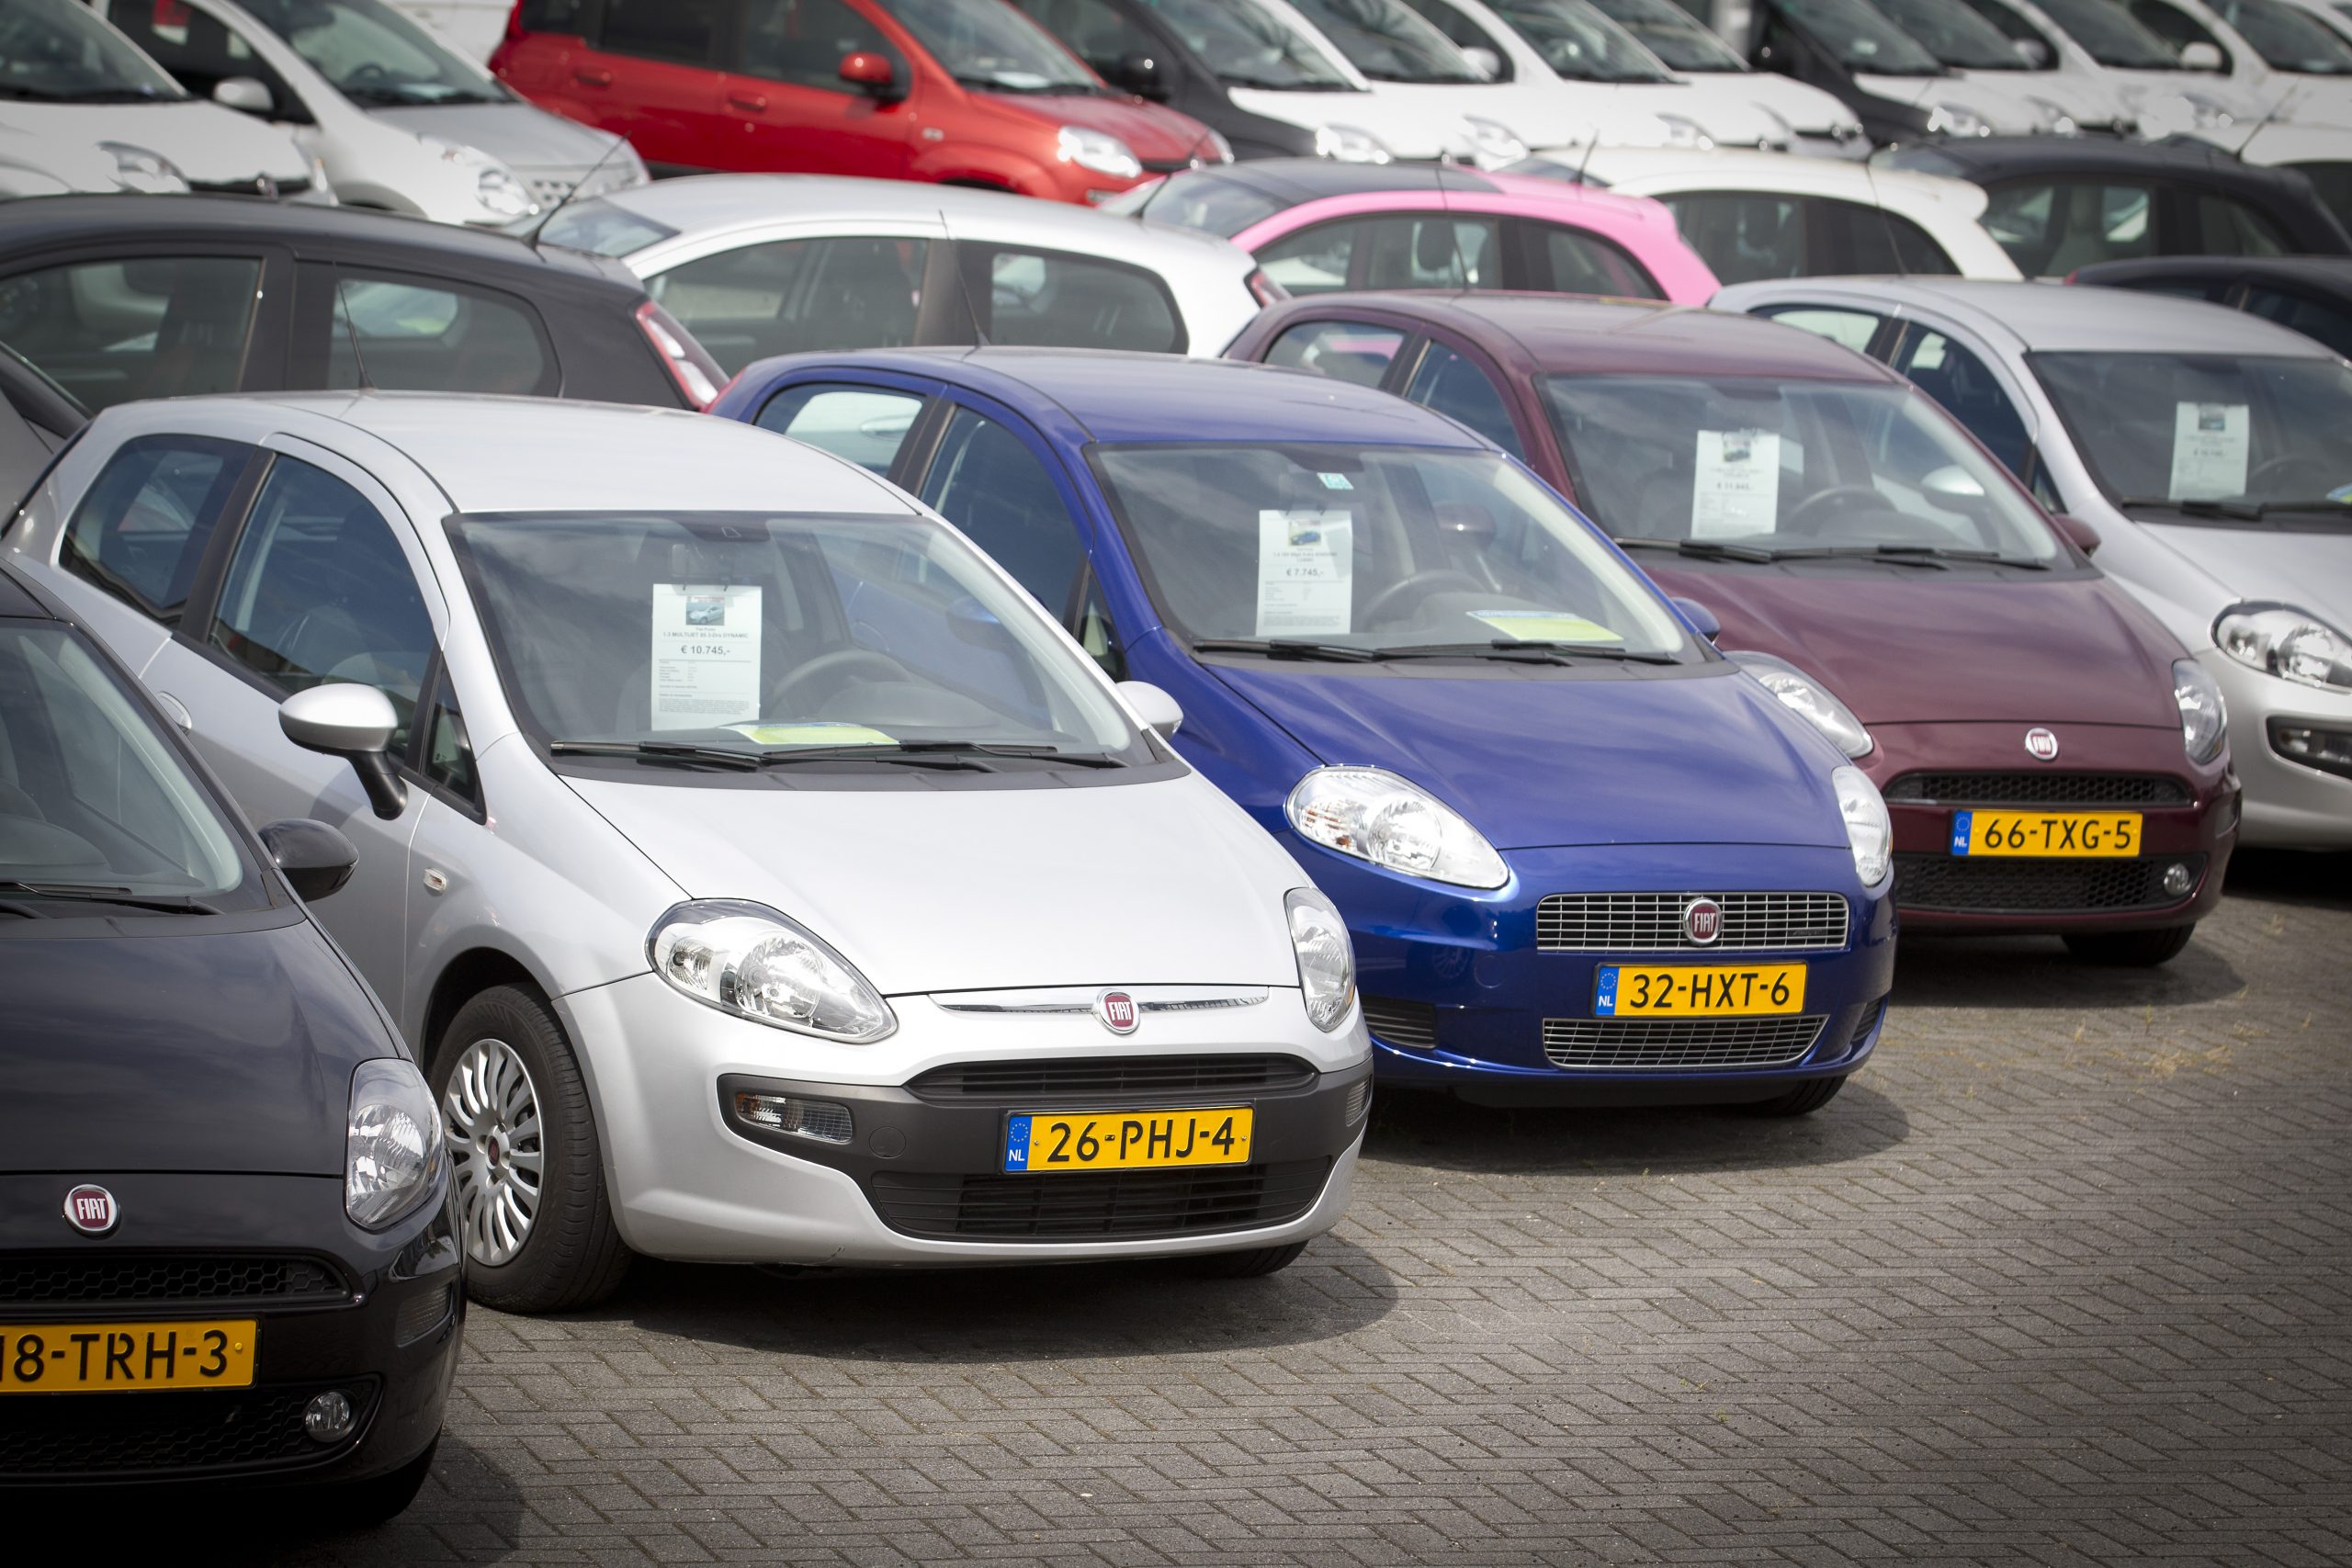 Occasions bij een autobedrijf in Utrecht.